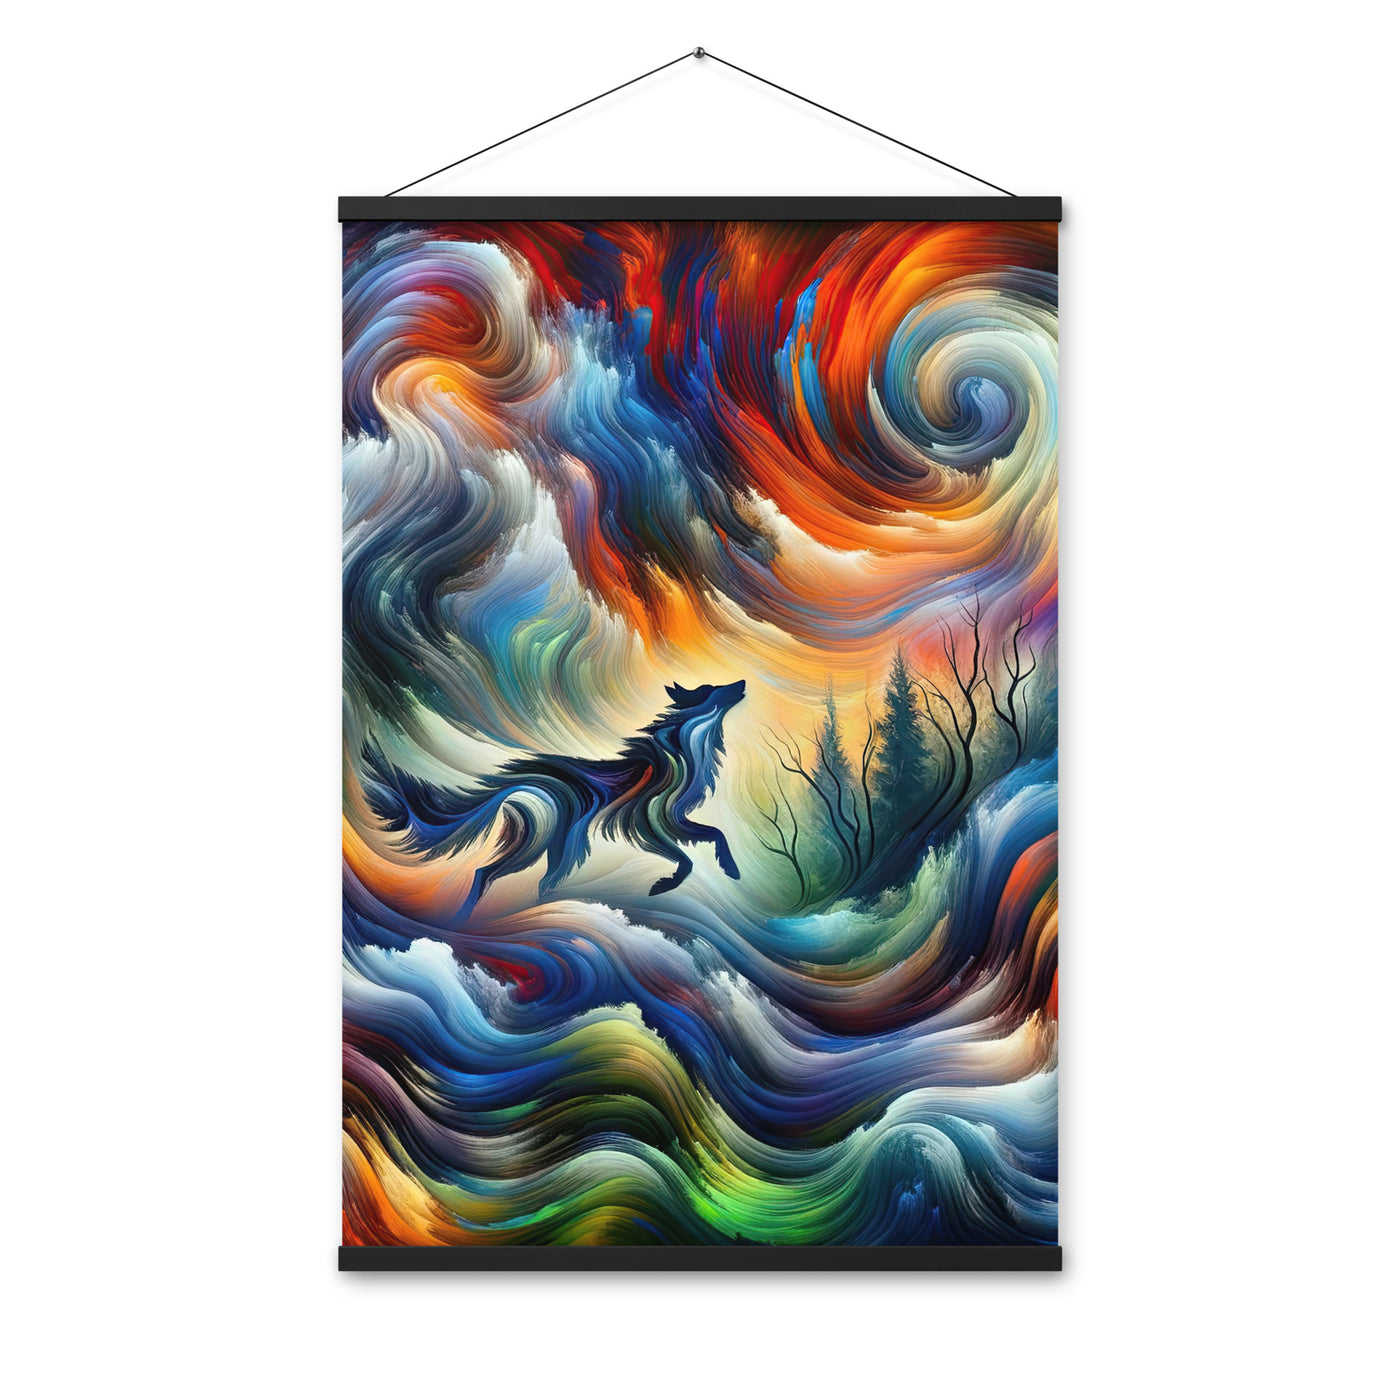 Alpen Abstraktgemälde mit Wolf Silhouette in lebhaften Farben (AN) - Premium Poster mit Aufhängung xxx yyy zzz 61 x 91.4 cm